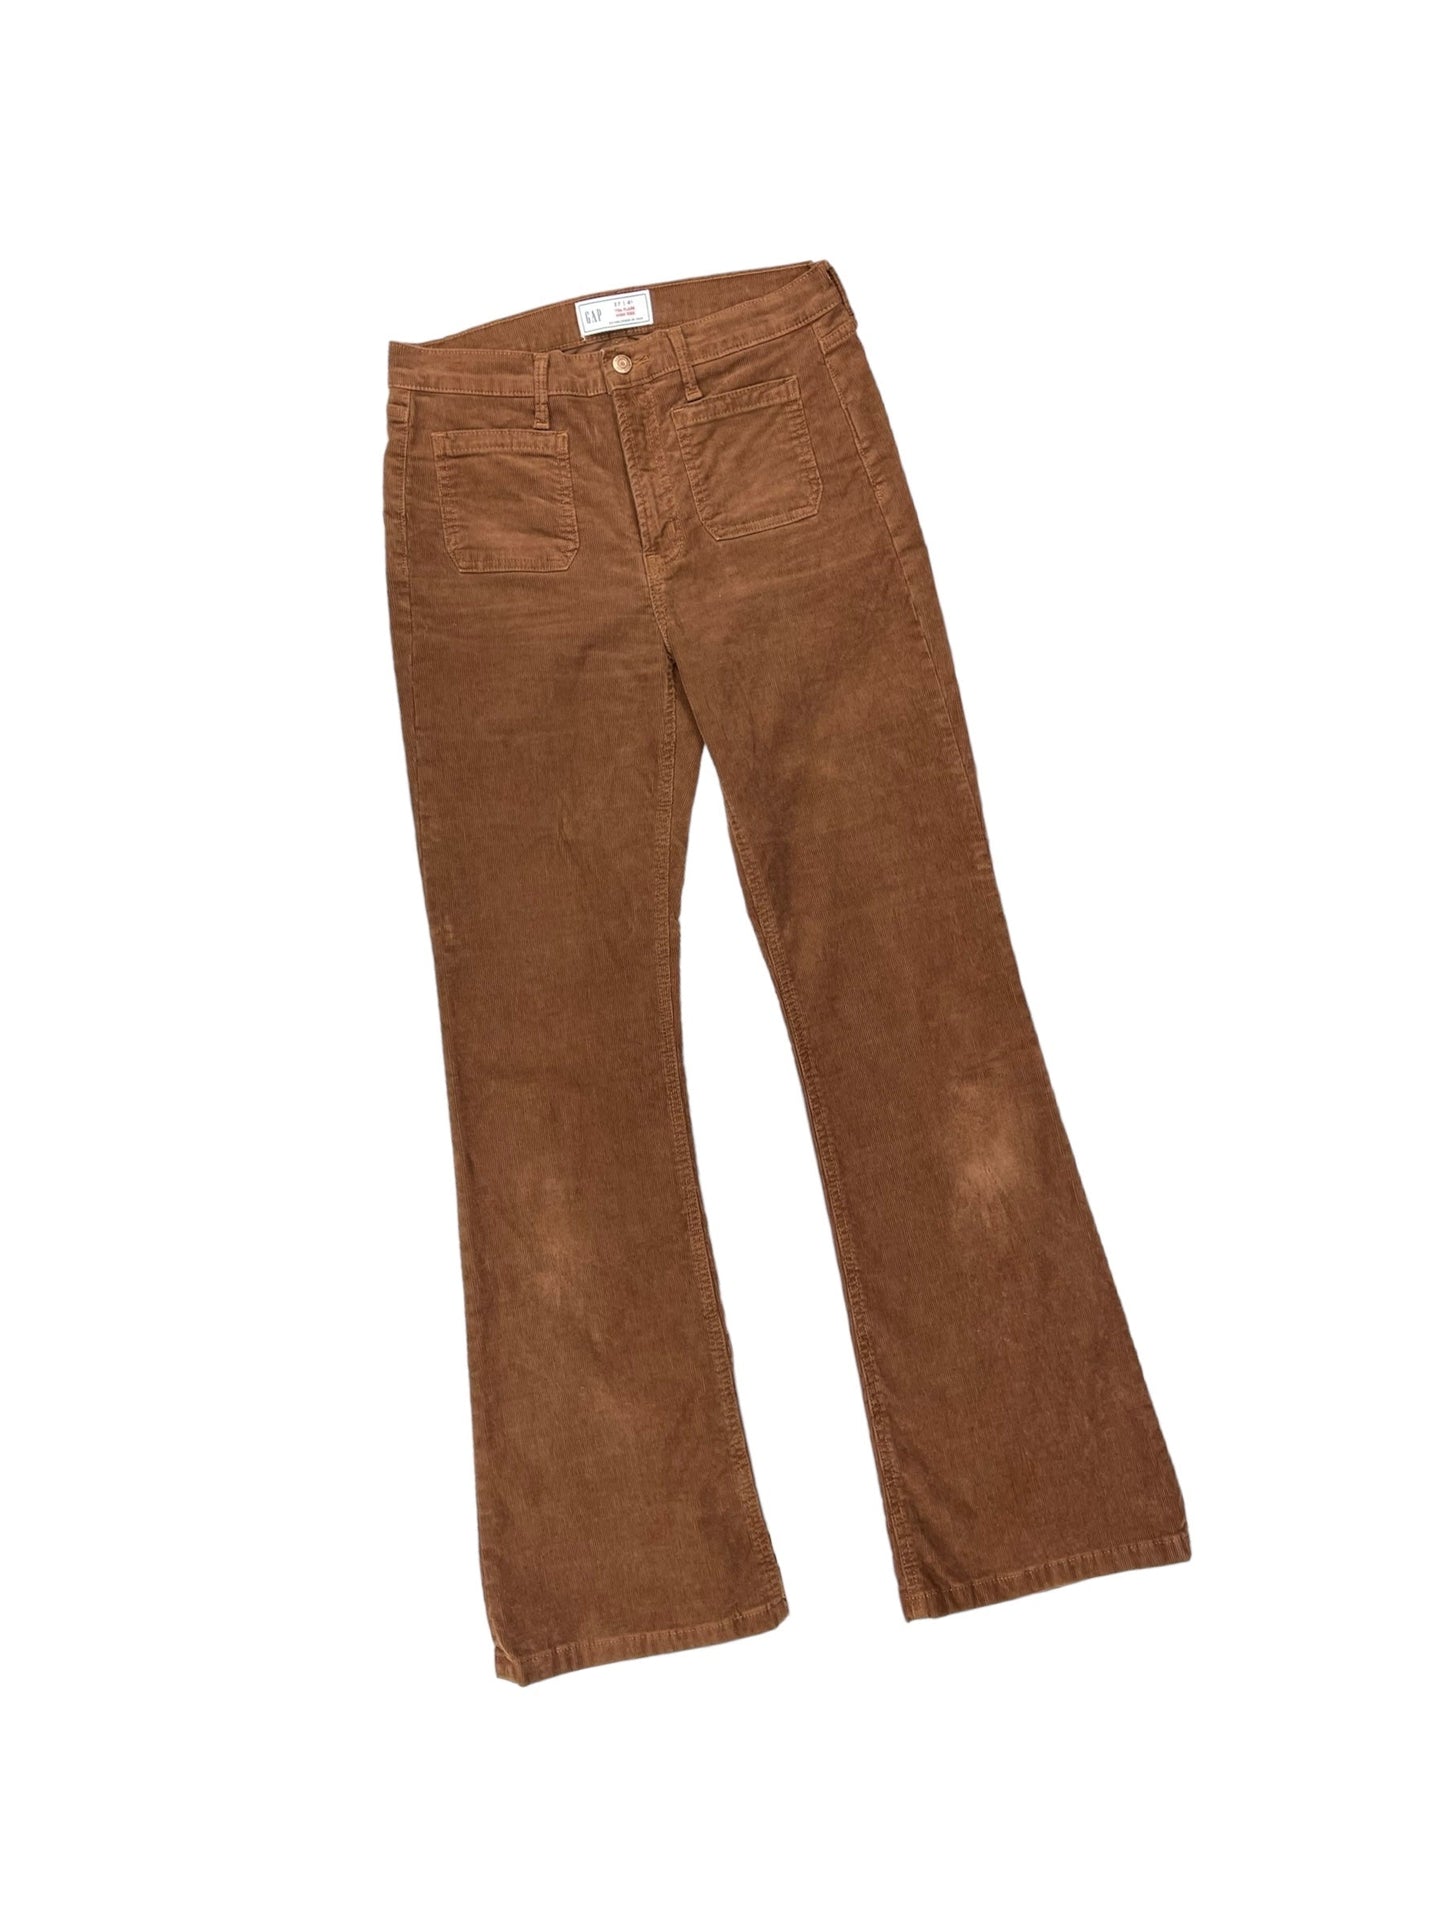 Pants Corduroy By Gap  Size: 4l